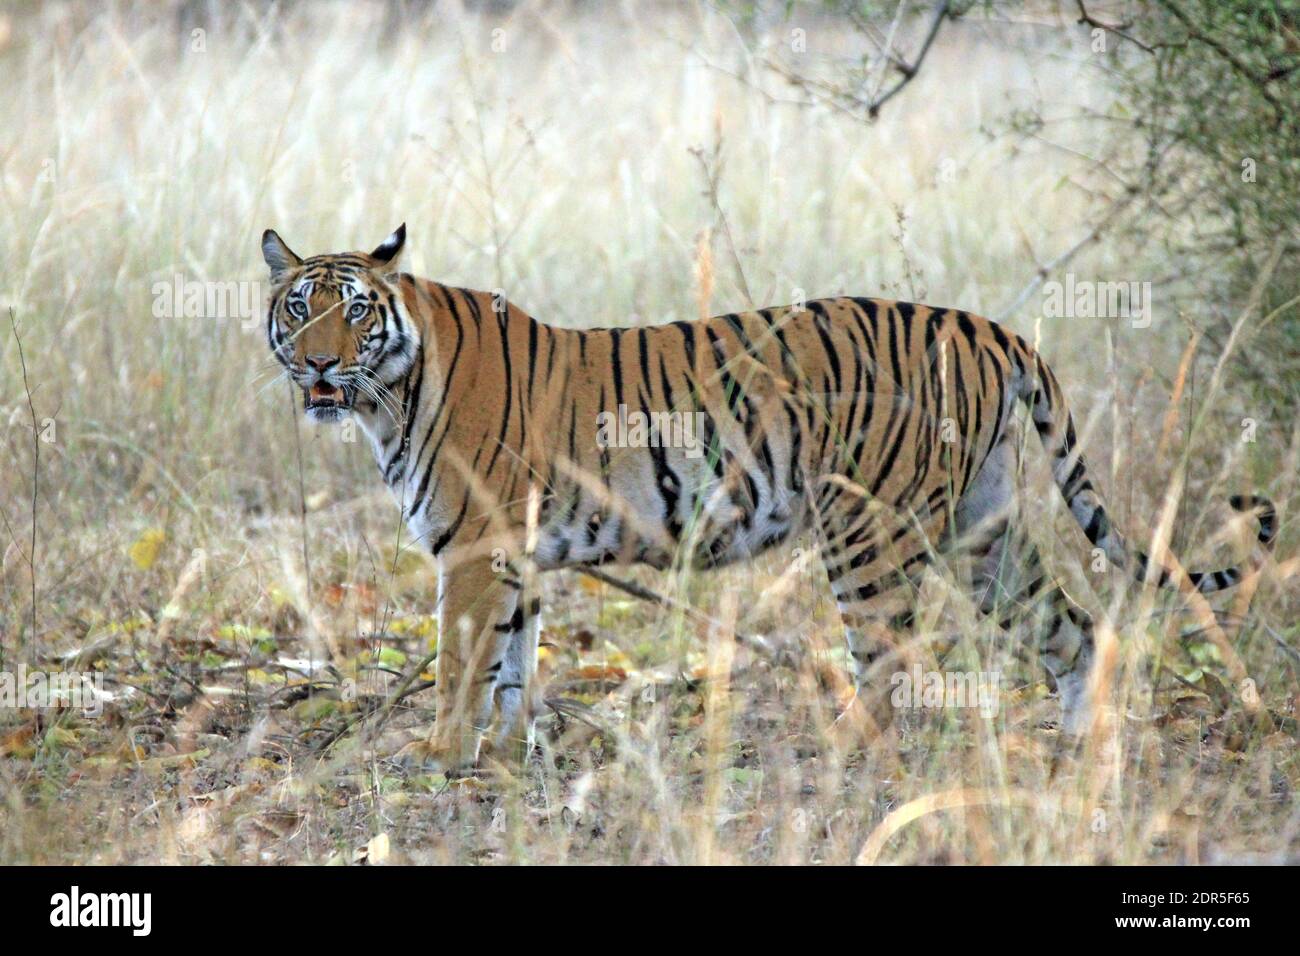 Tigre du Bengale (Panthera tigris tigris) en haute herbe, regardant dans la caméra. Bandhavgarh, Inde Banque D'Images